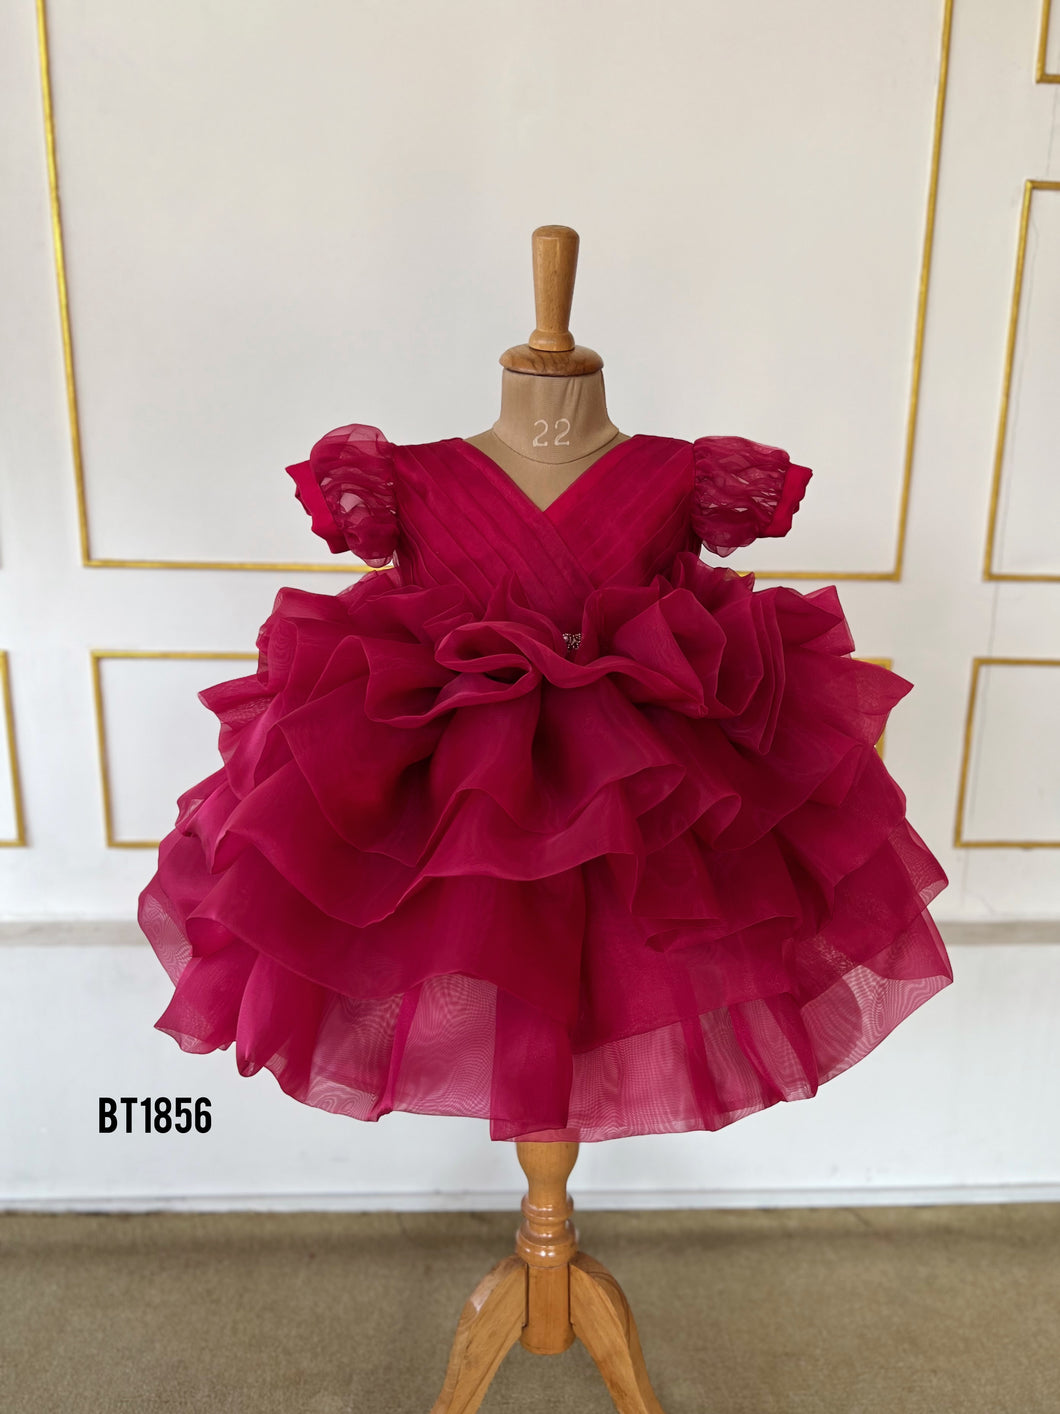 BT1856 Crimson Rose Twirl Dress - A Cascade of Elegance!